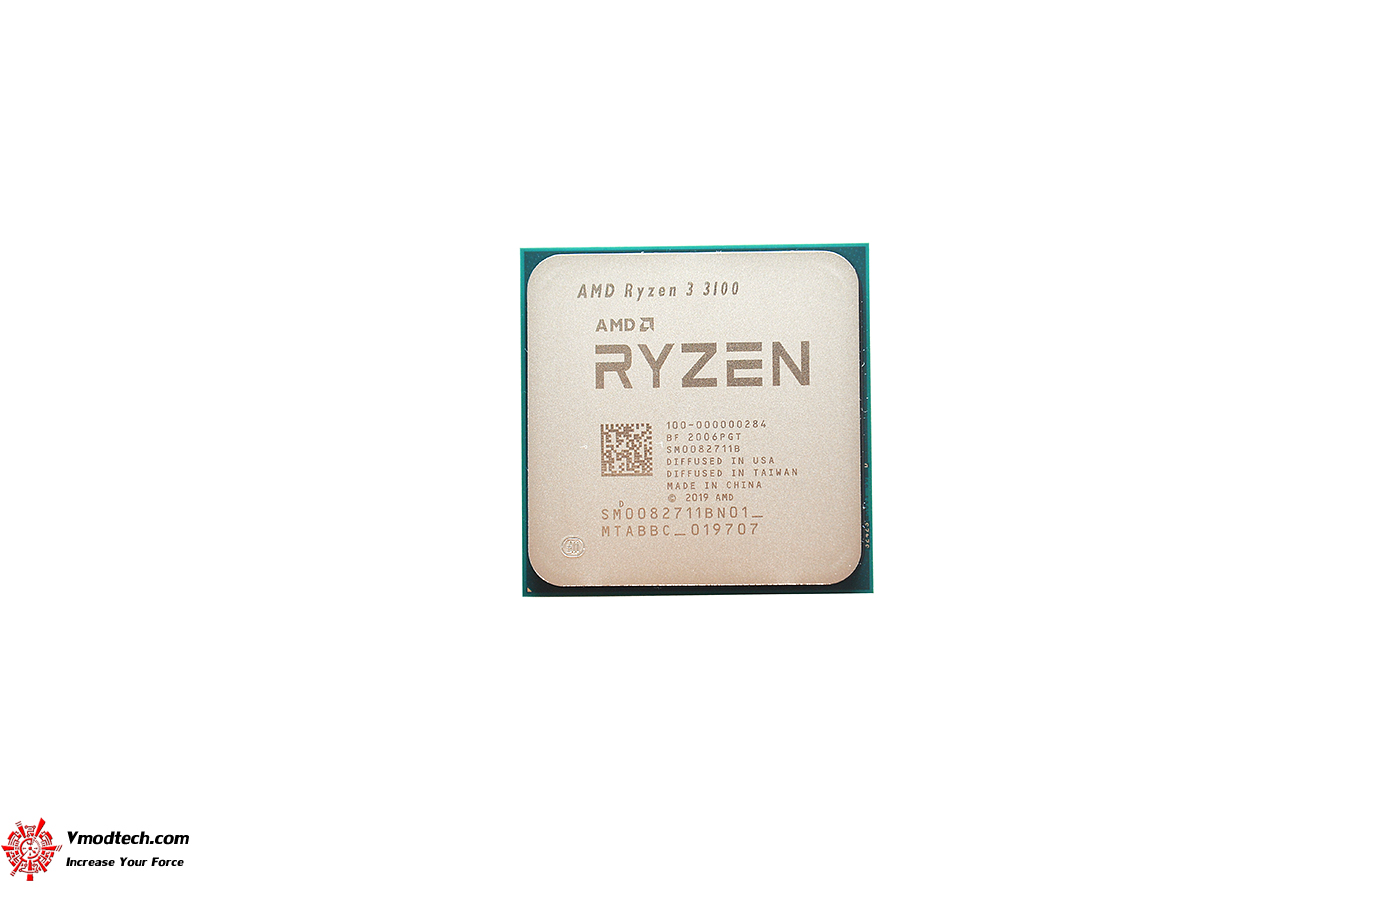 หน้าที่ 1 - AMD RYZEN 3 3100 PROCESSOR REVIEW | Vmodtech.com | Review